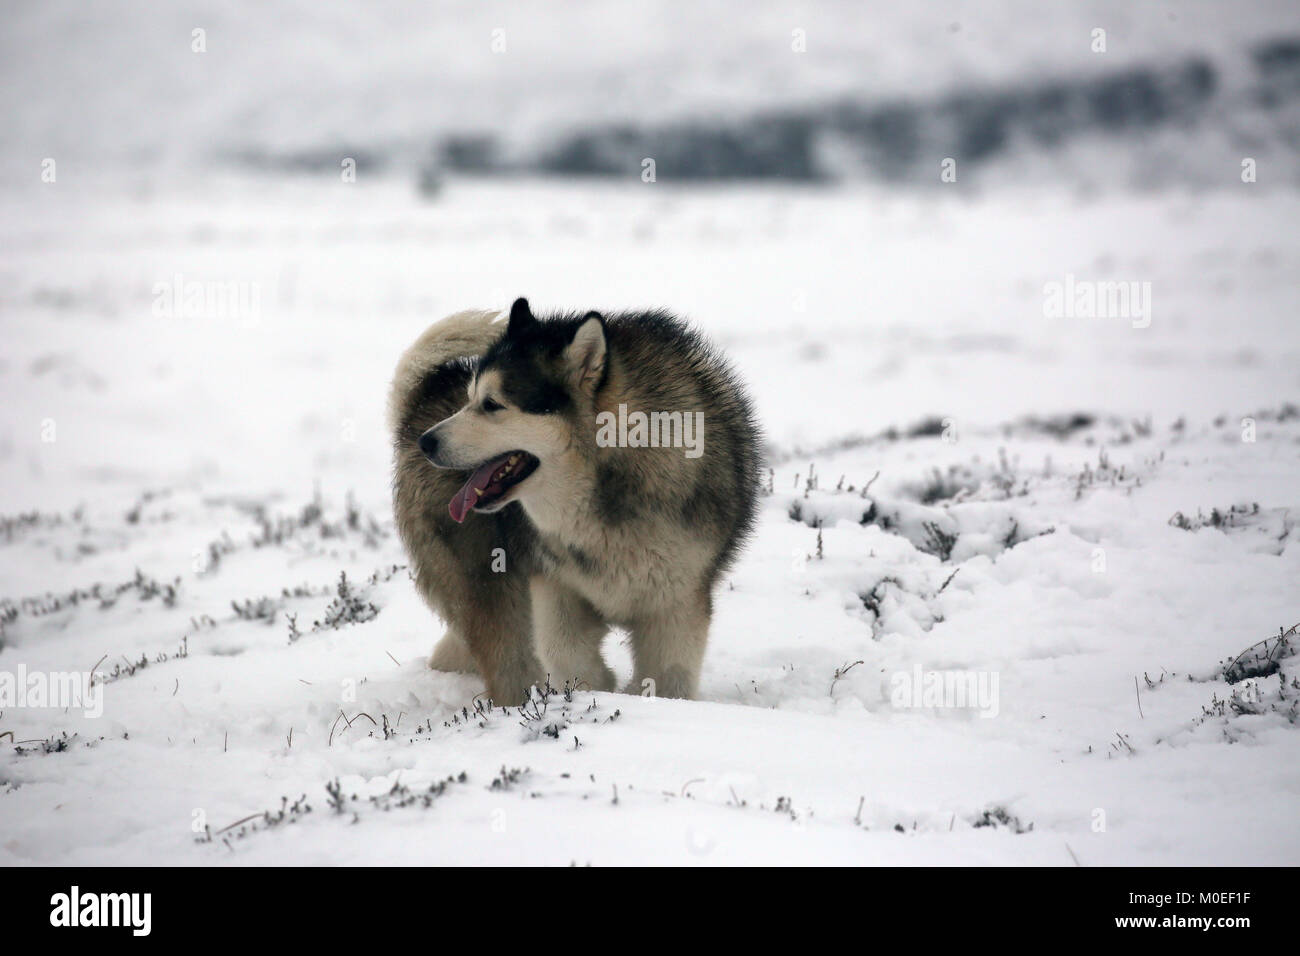 West Yorkshire, UK. Jan 21, 2018. Un chien malamute d'Alaska dans la neige sur Saddleworth Moor, West Yorkshire, le 20 janvier, 2018 (C)Barbara Cook/Alamy Live News Crédit : Barbara Cook/Alamy Live News Banque D'Images